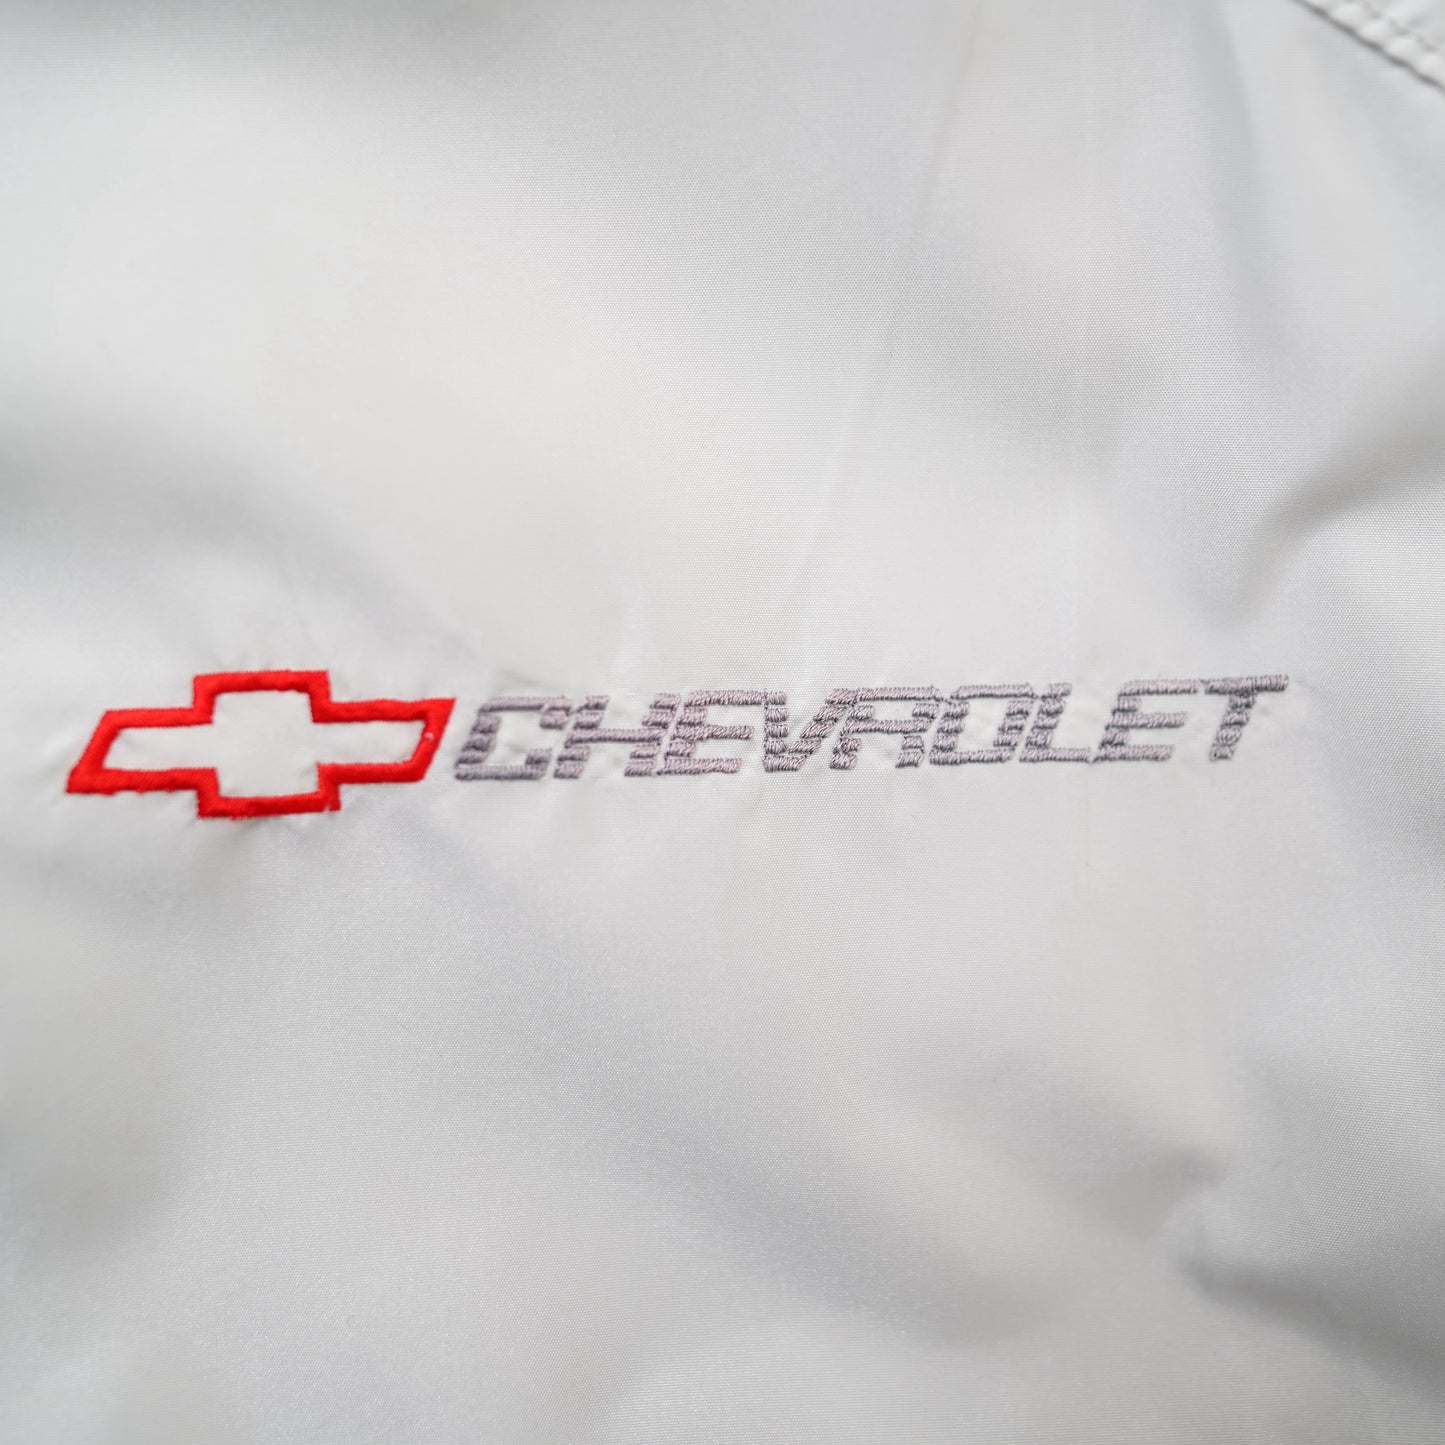 CHEVROLET nylon jacket